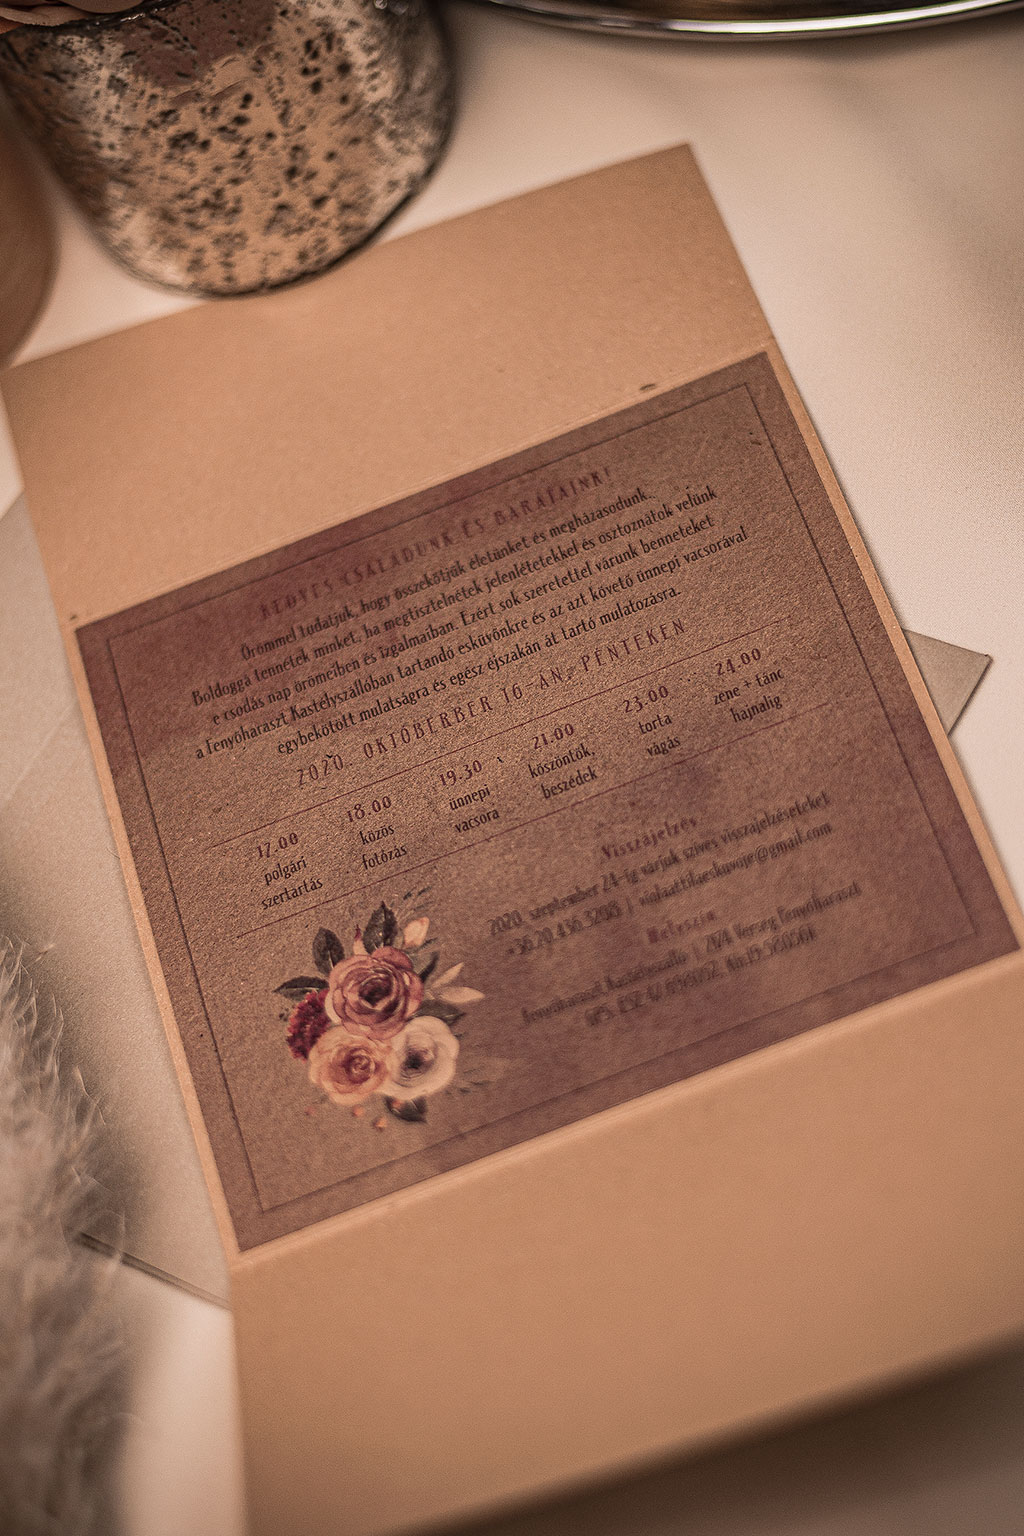 Őszi virágos kraft meghívó ívelt formájú hajtott tasakkal kívül monogramos címkével, belül ragasztott kártyával vízfestékes virág grafikával